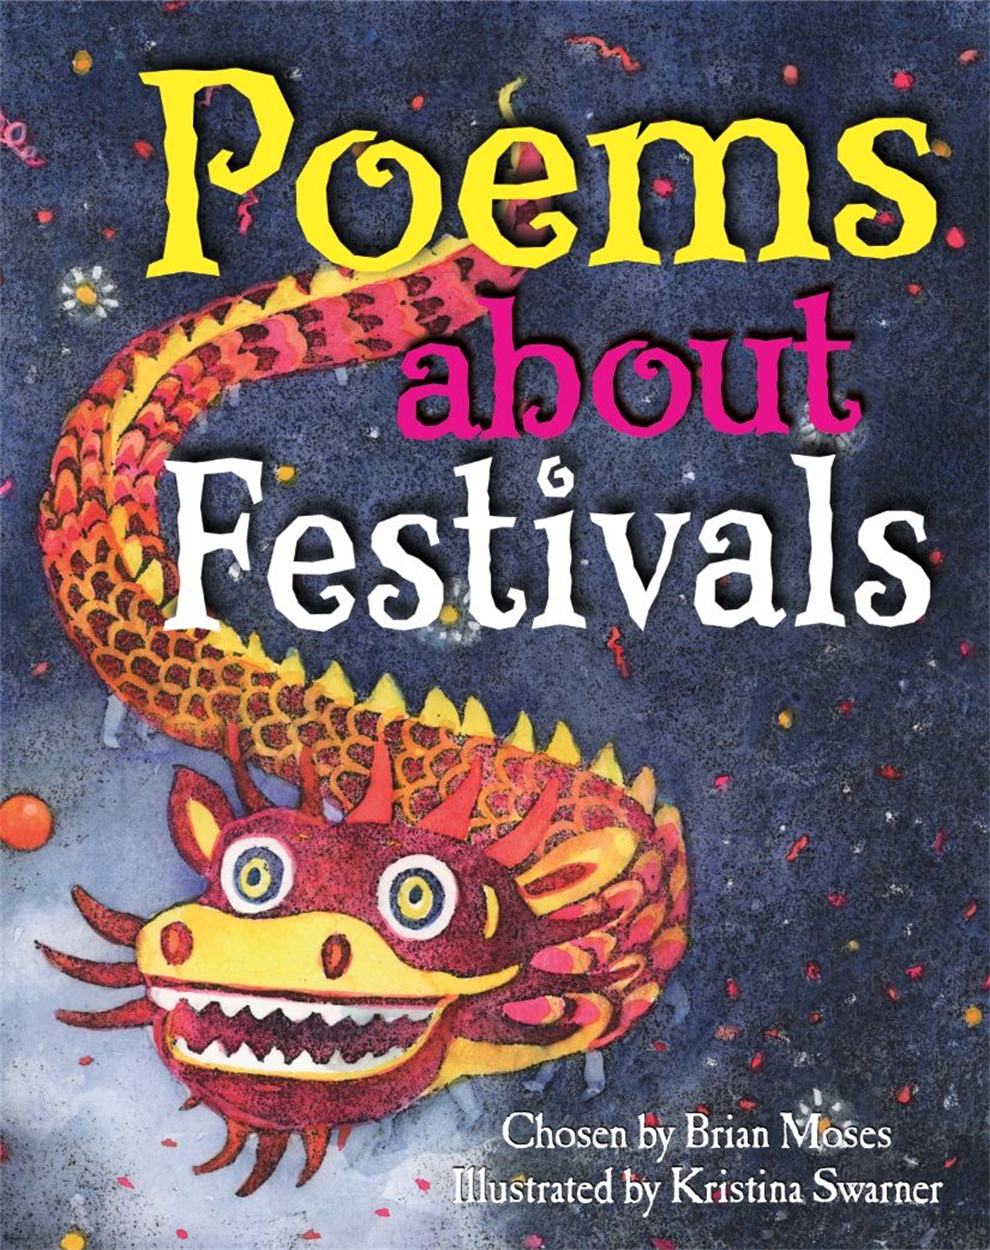 speech festival poems